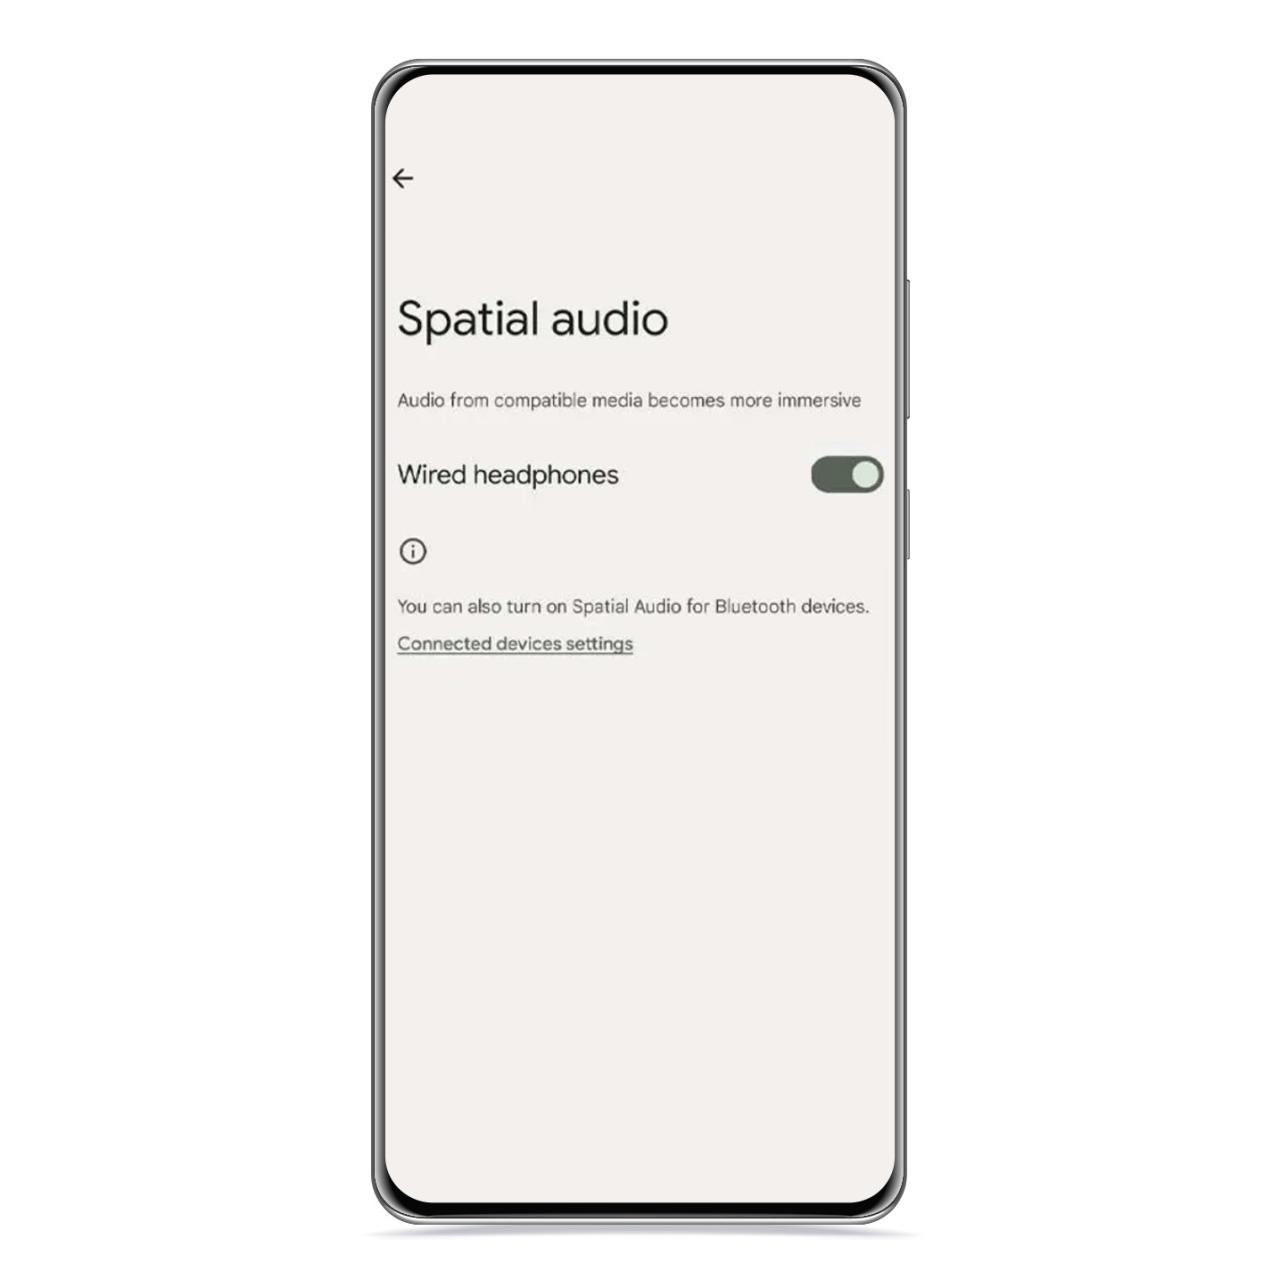 Spatial audio